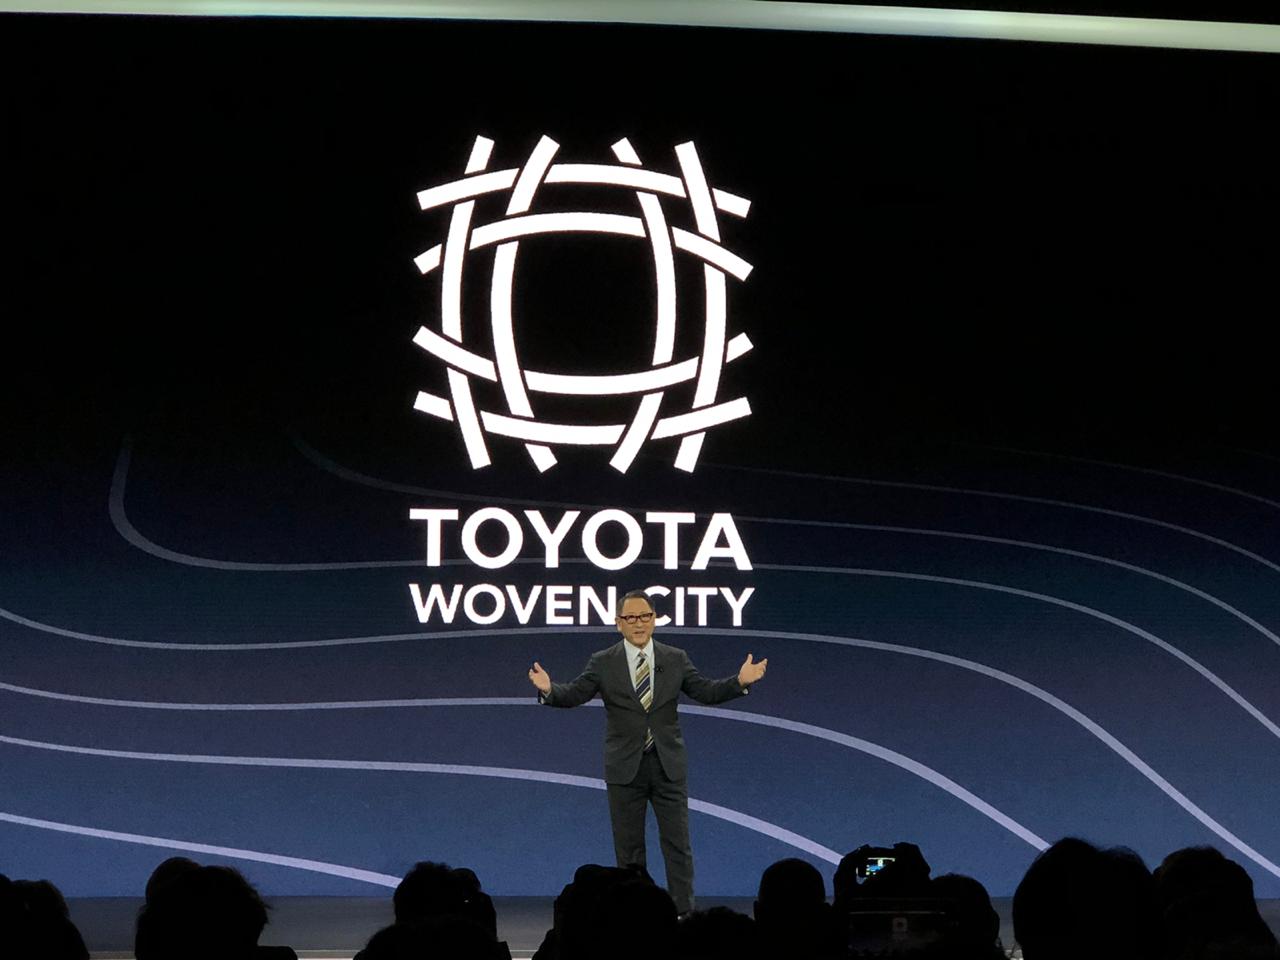 Toyota construirá una ciudad para probar sus tecnologías